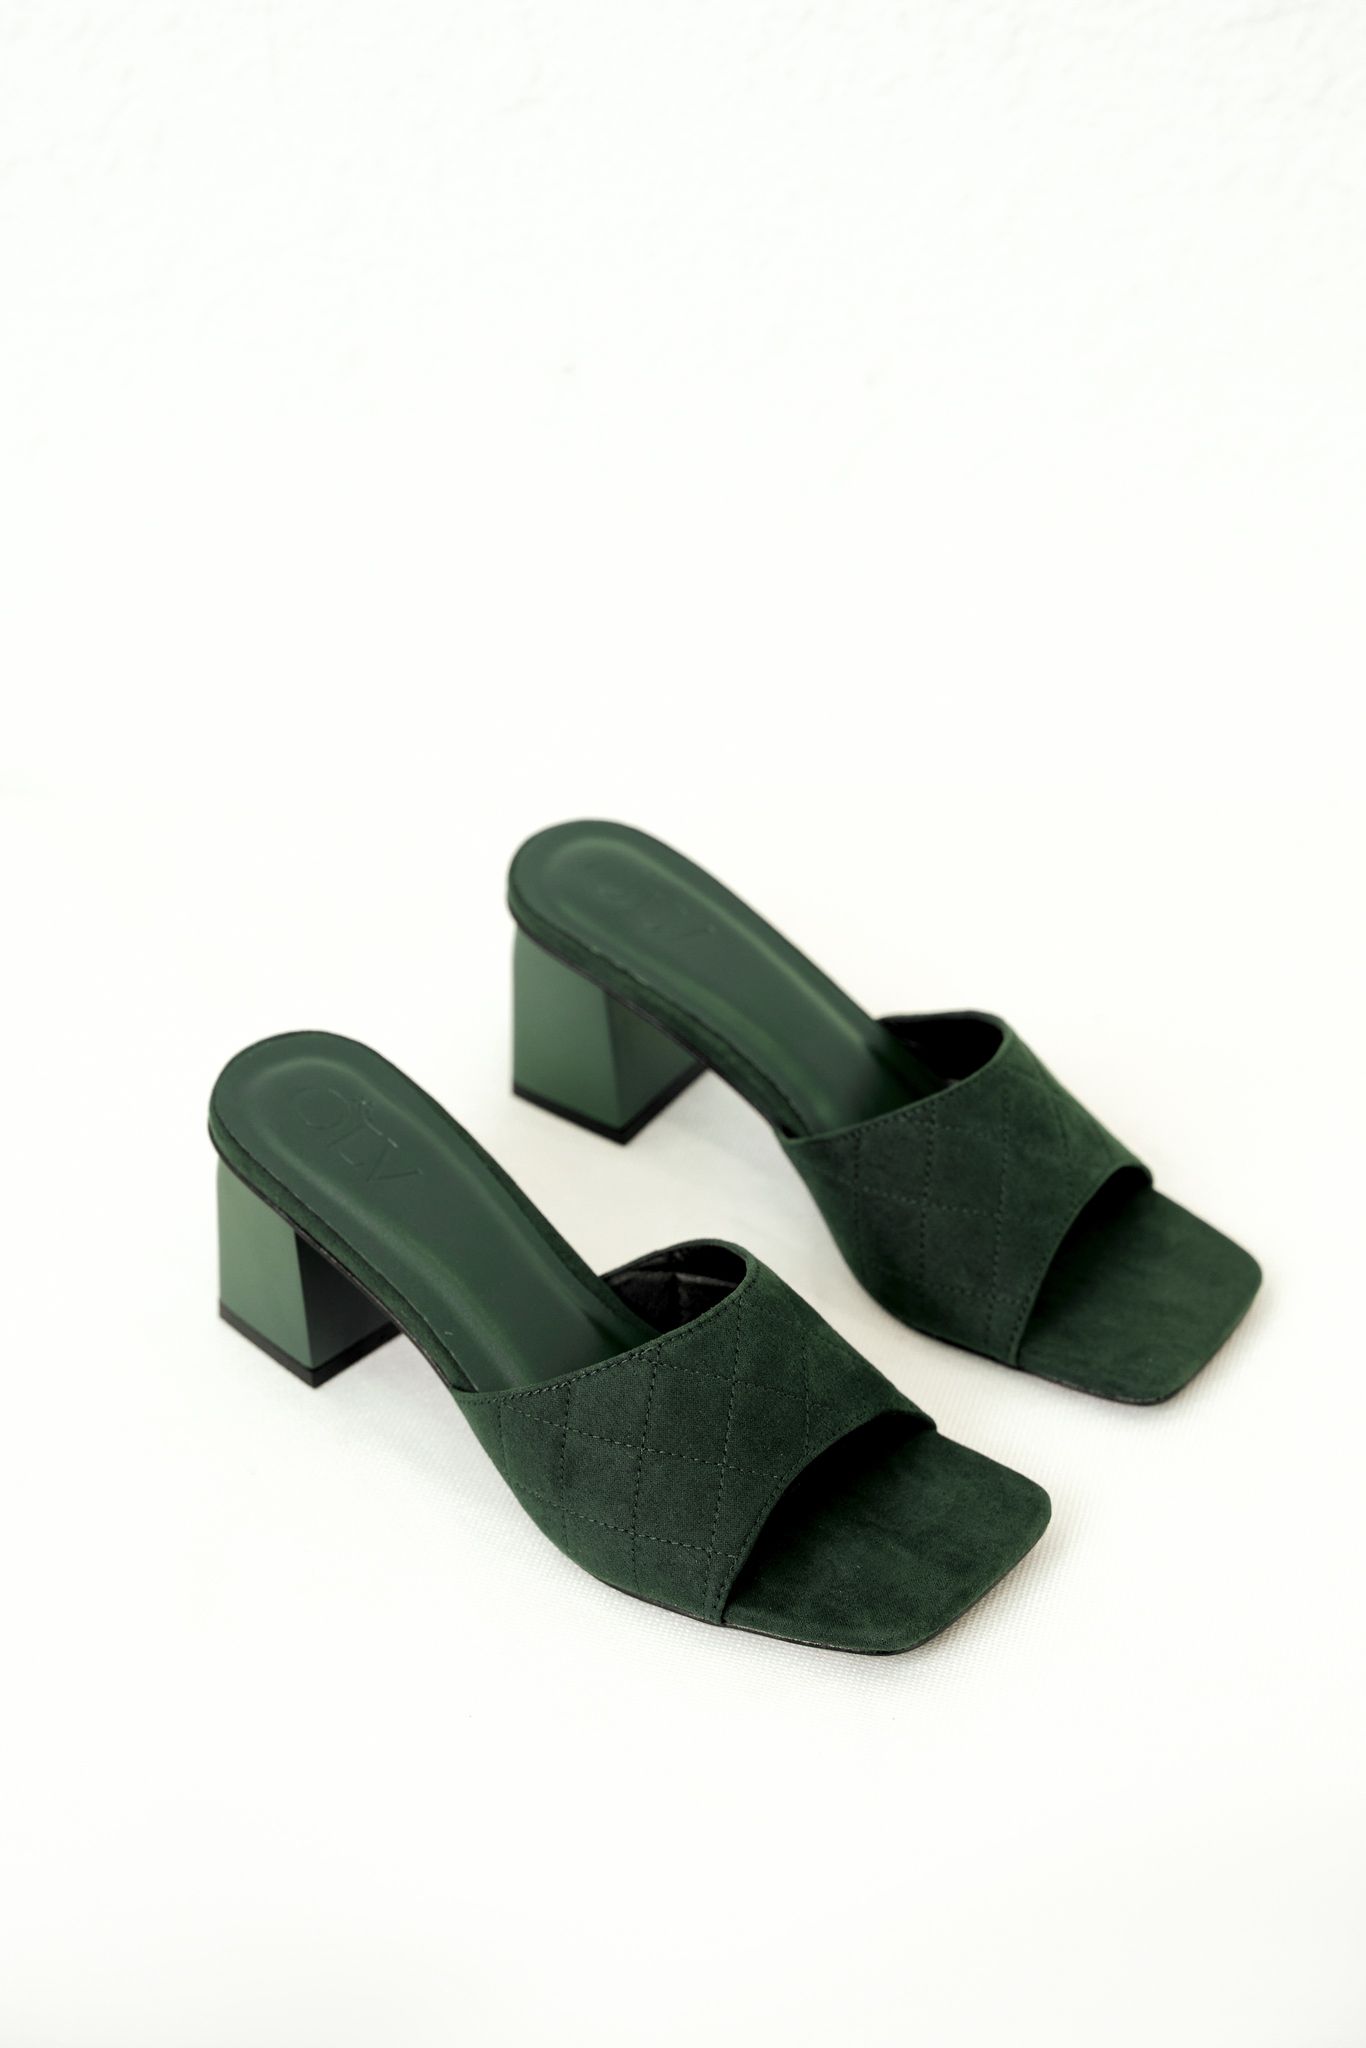 OLV - Giày Genesis Green Heels